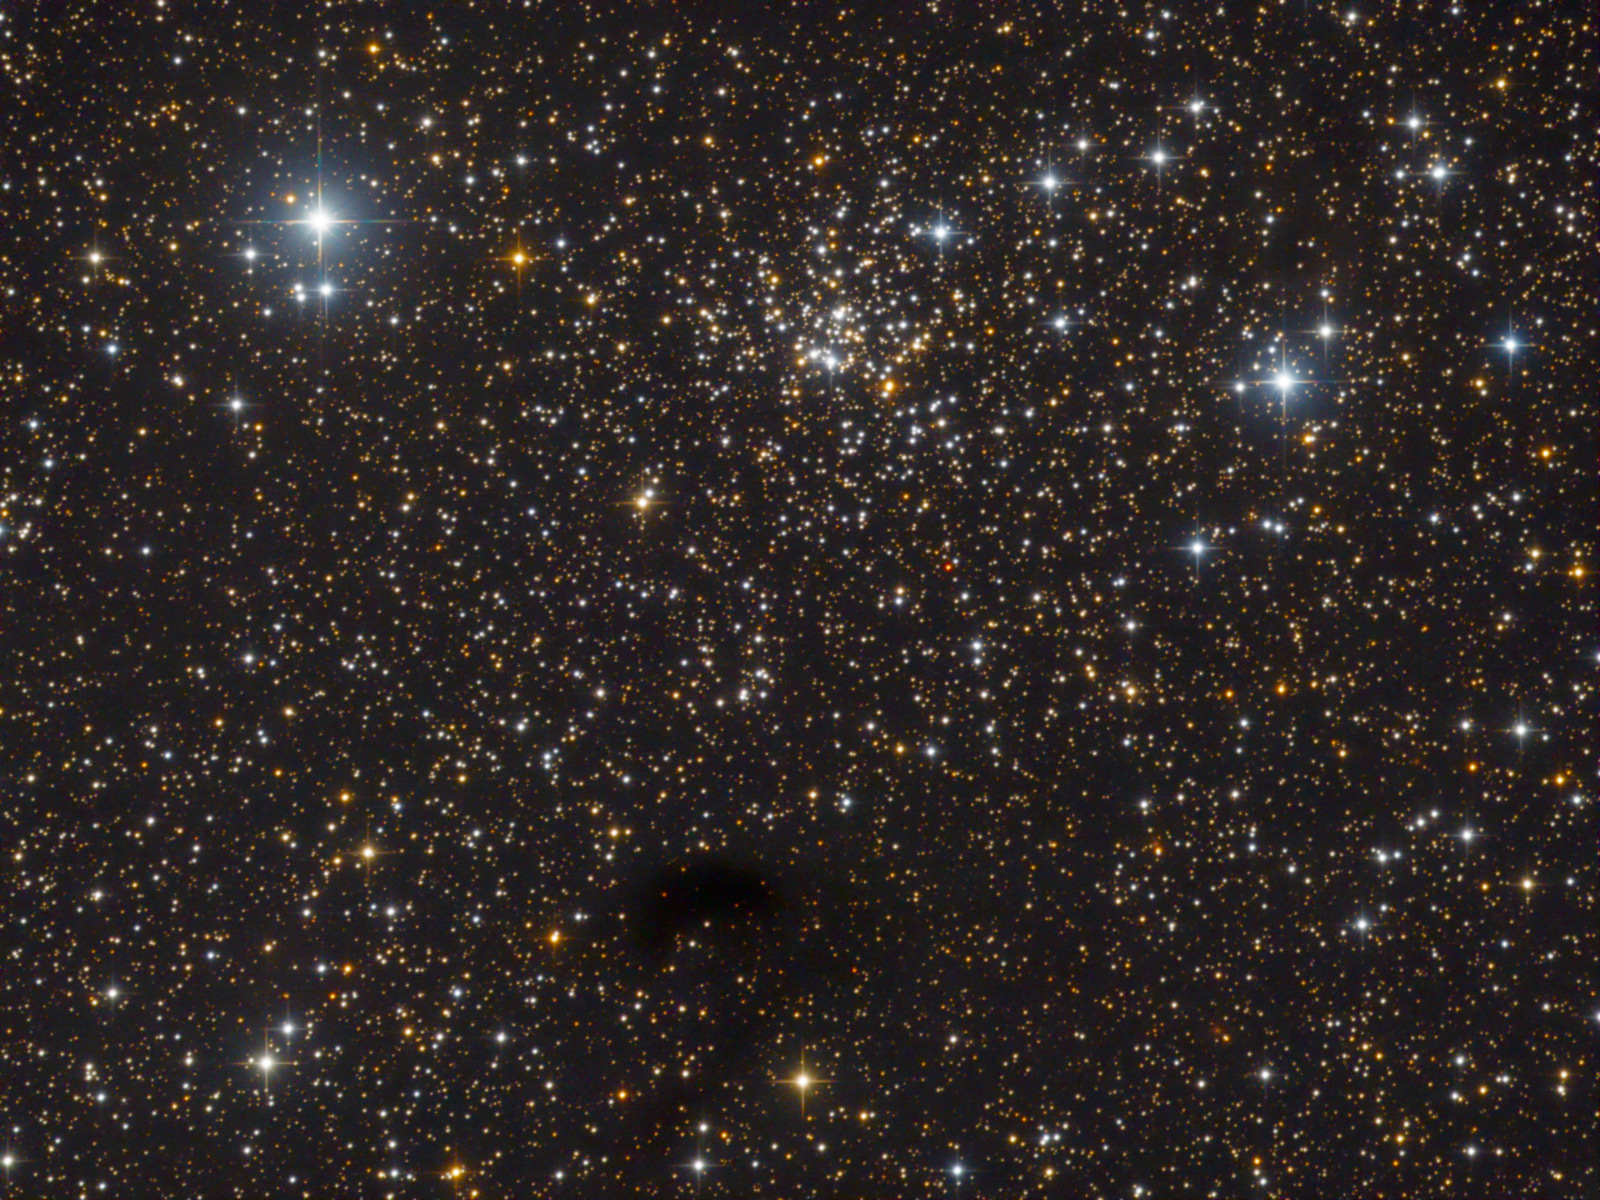 NGC 559